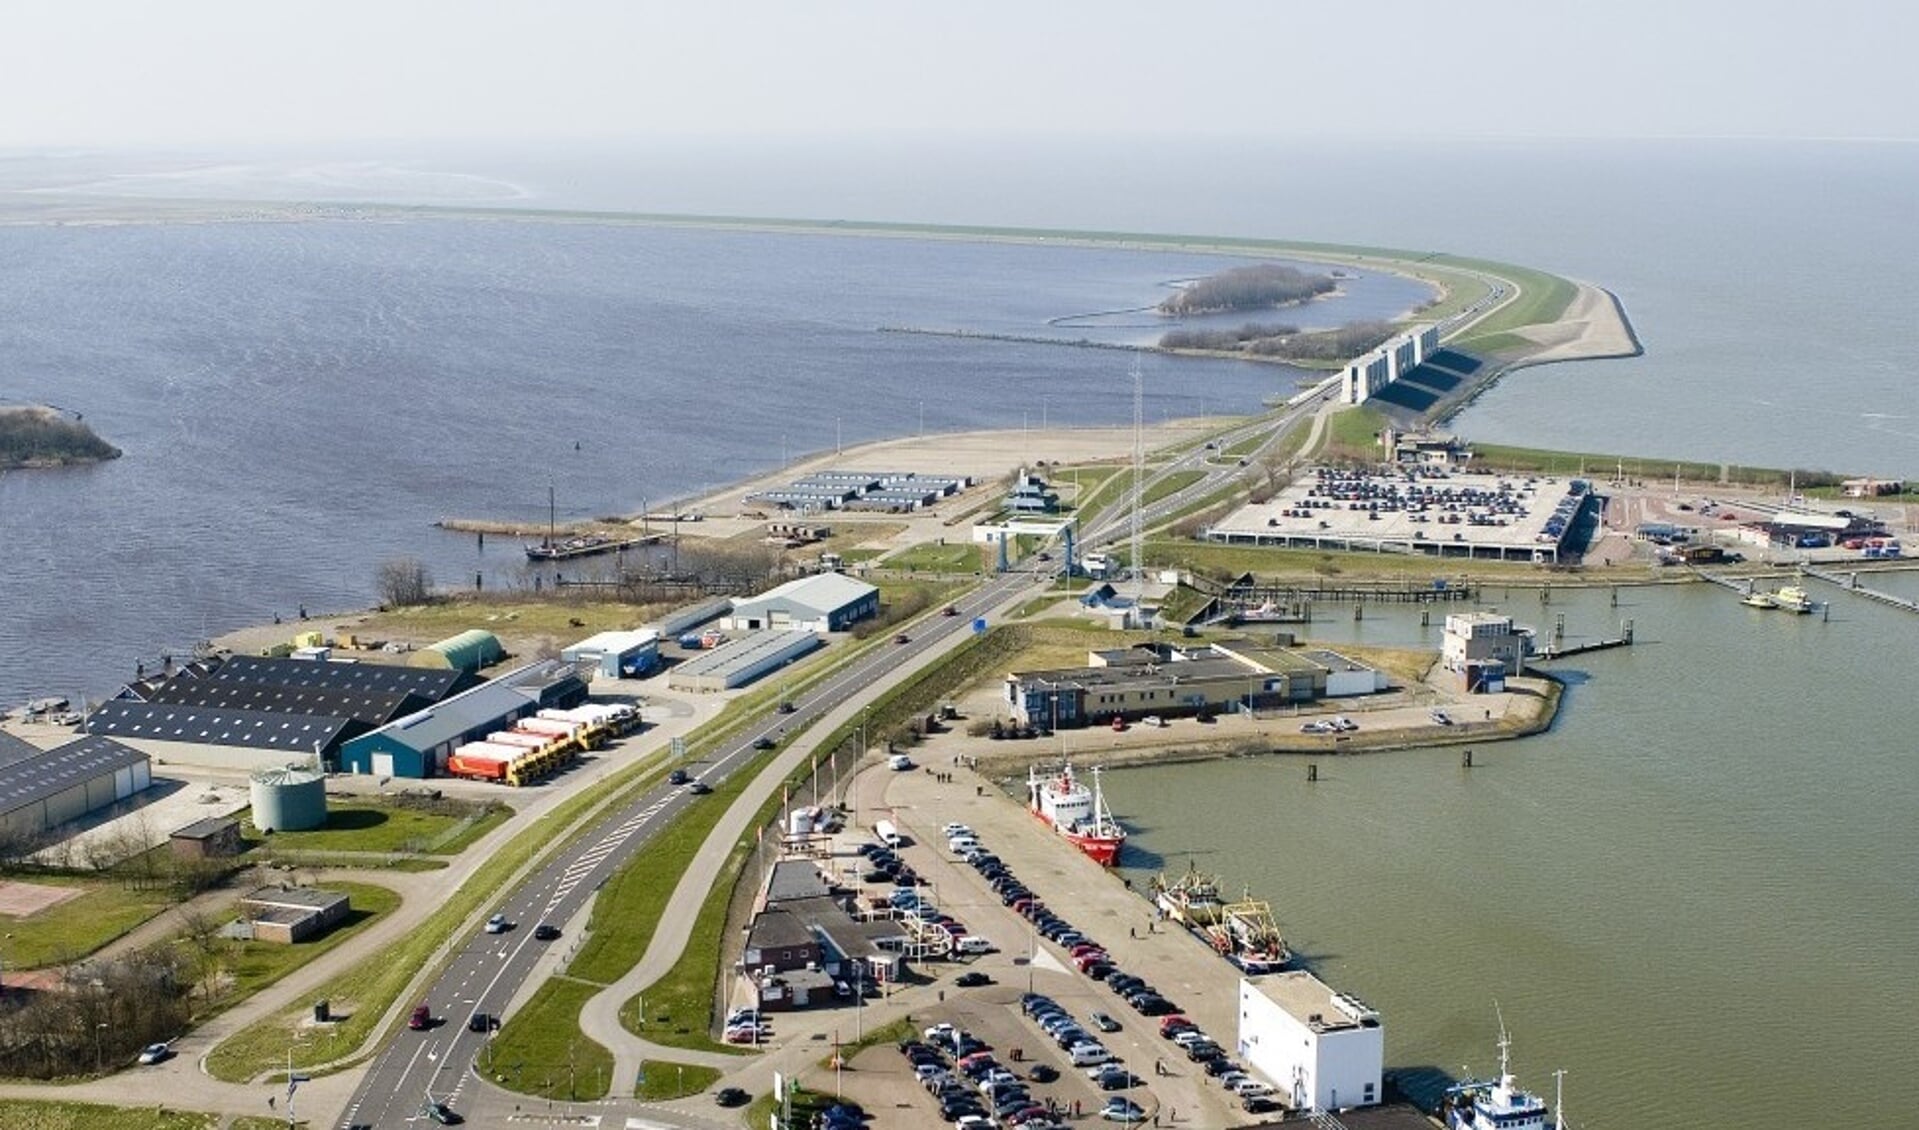 De haven van Lauwersoog kan met de nieuwe weg beter ontsloten worden (archieffoto).